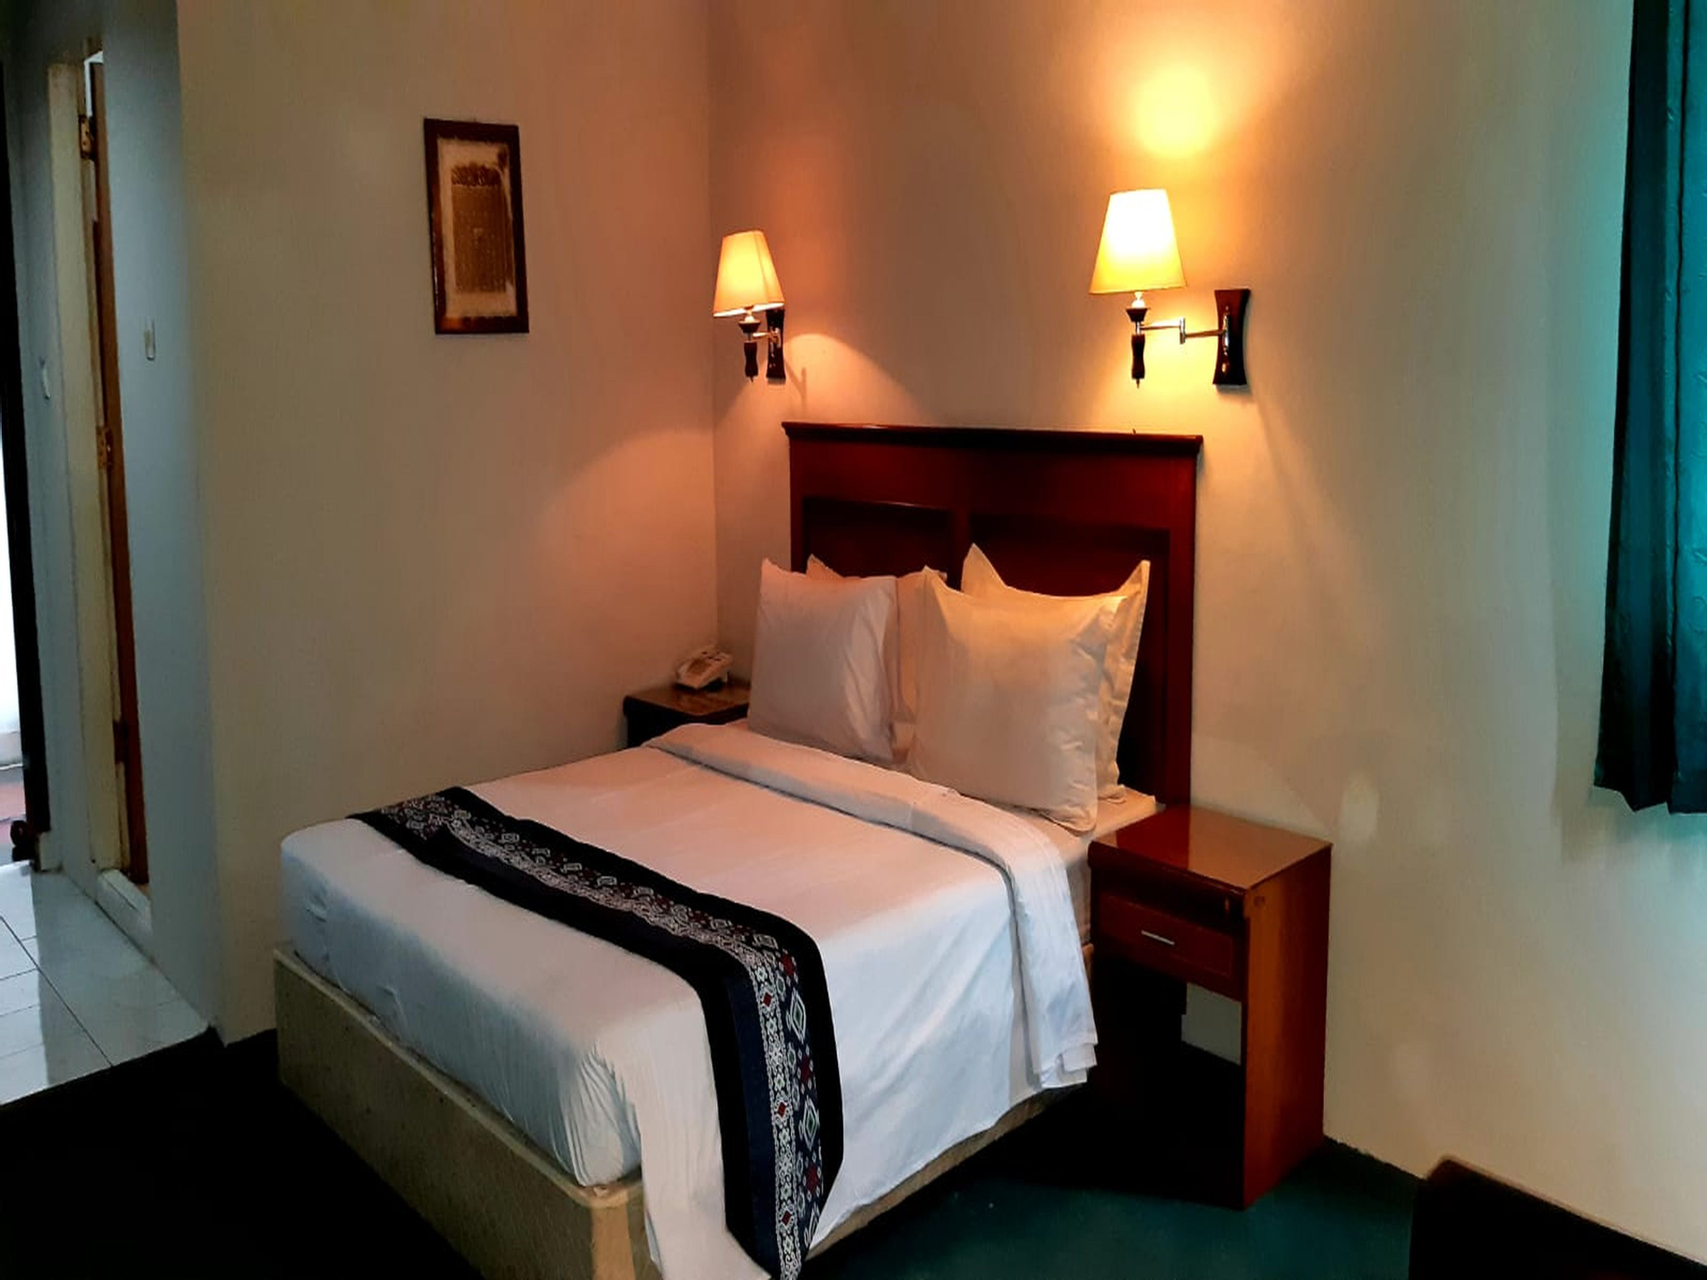 Bedroom 5, Citra Mulia Hotel Restaurant, Palu